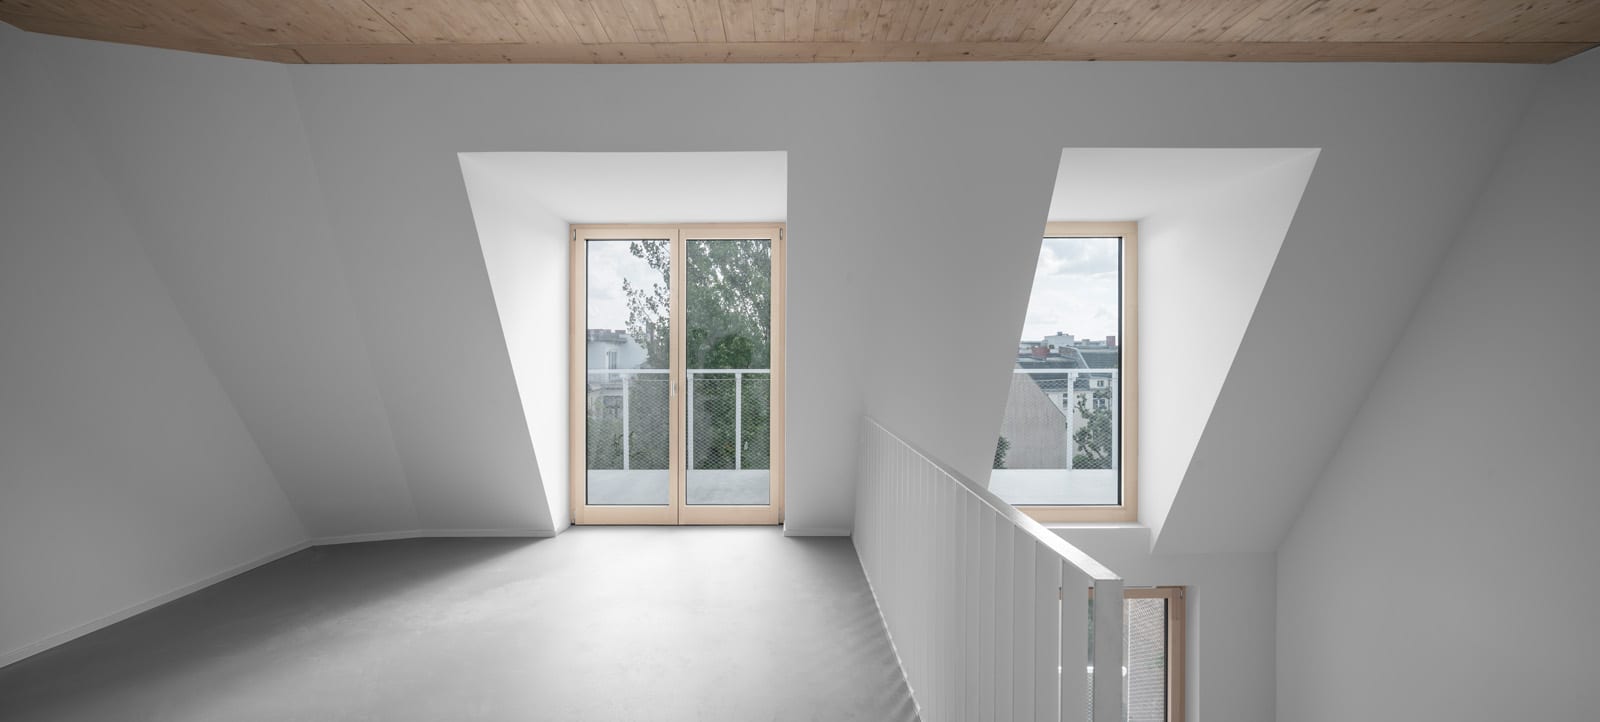 Bodentiefe Holz-Aluminium-Fenster in einer Maisonnette-Wohnung (Foto: Gui Rebelo)